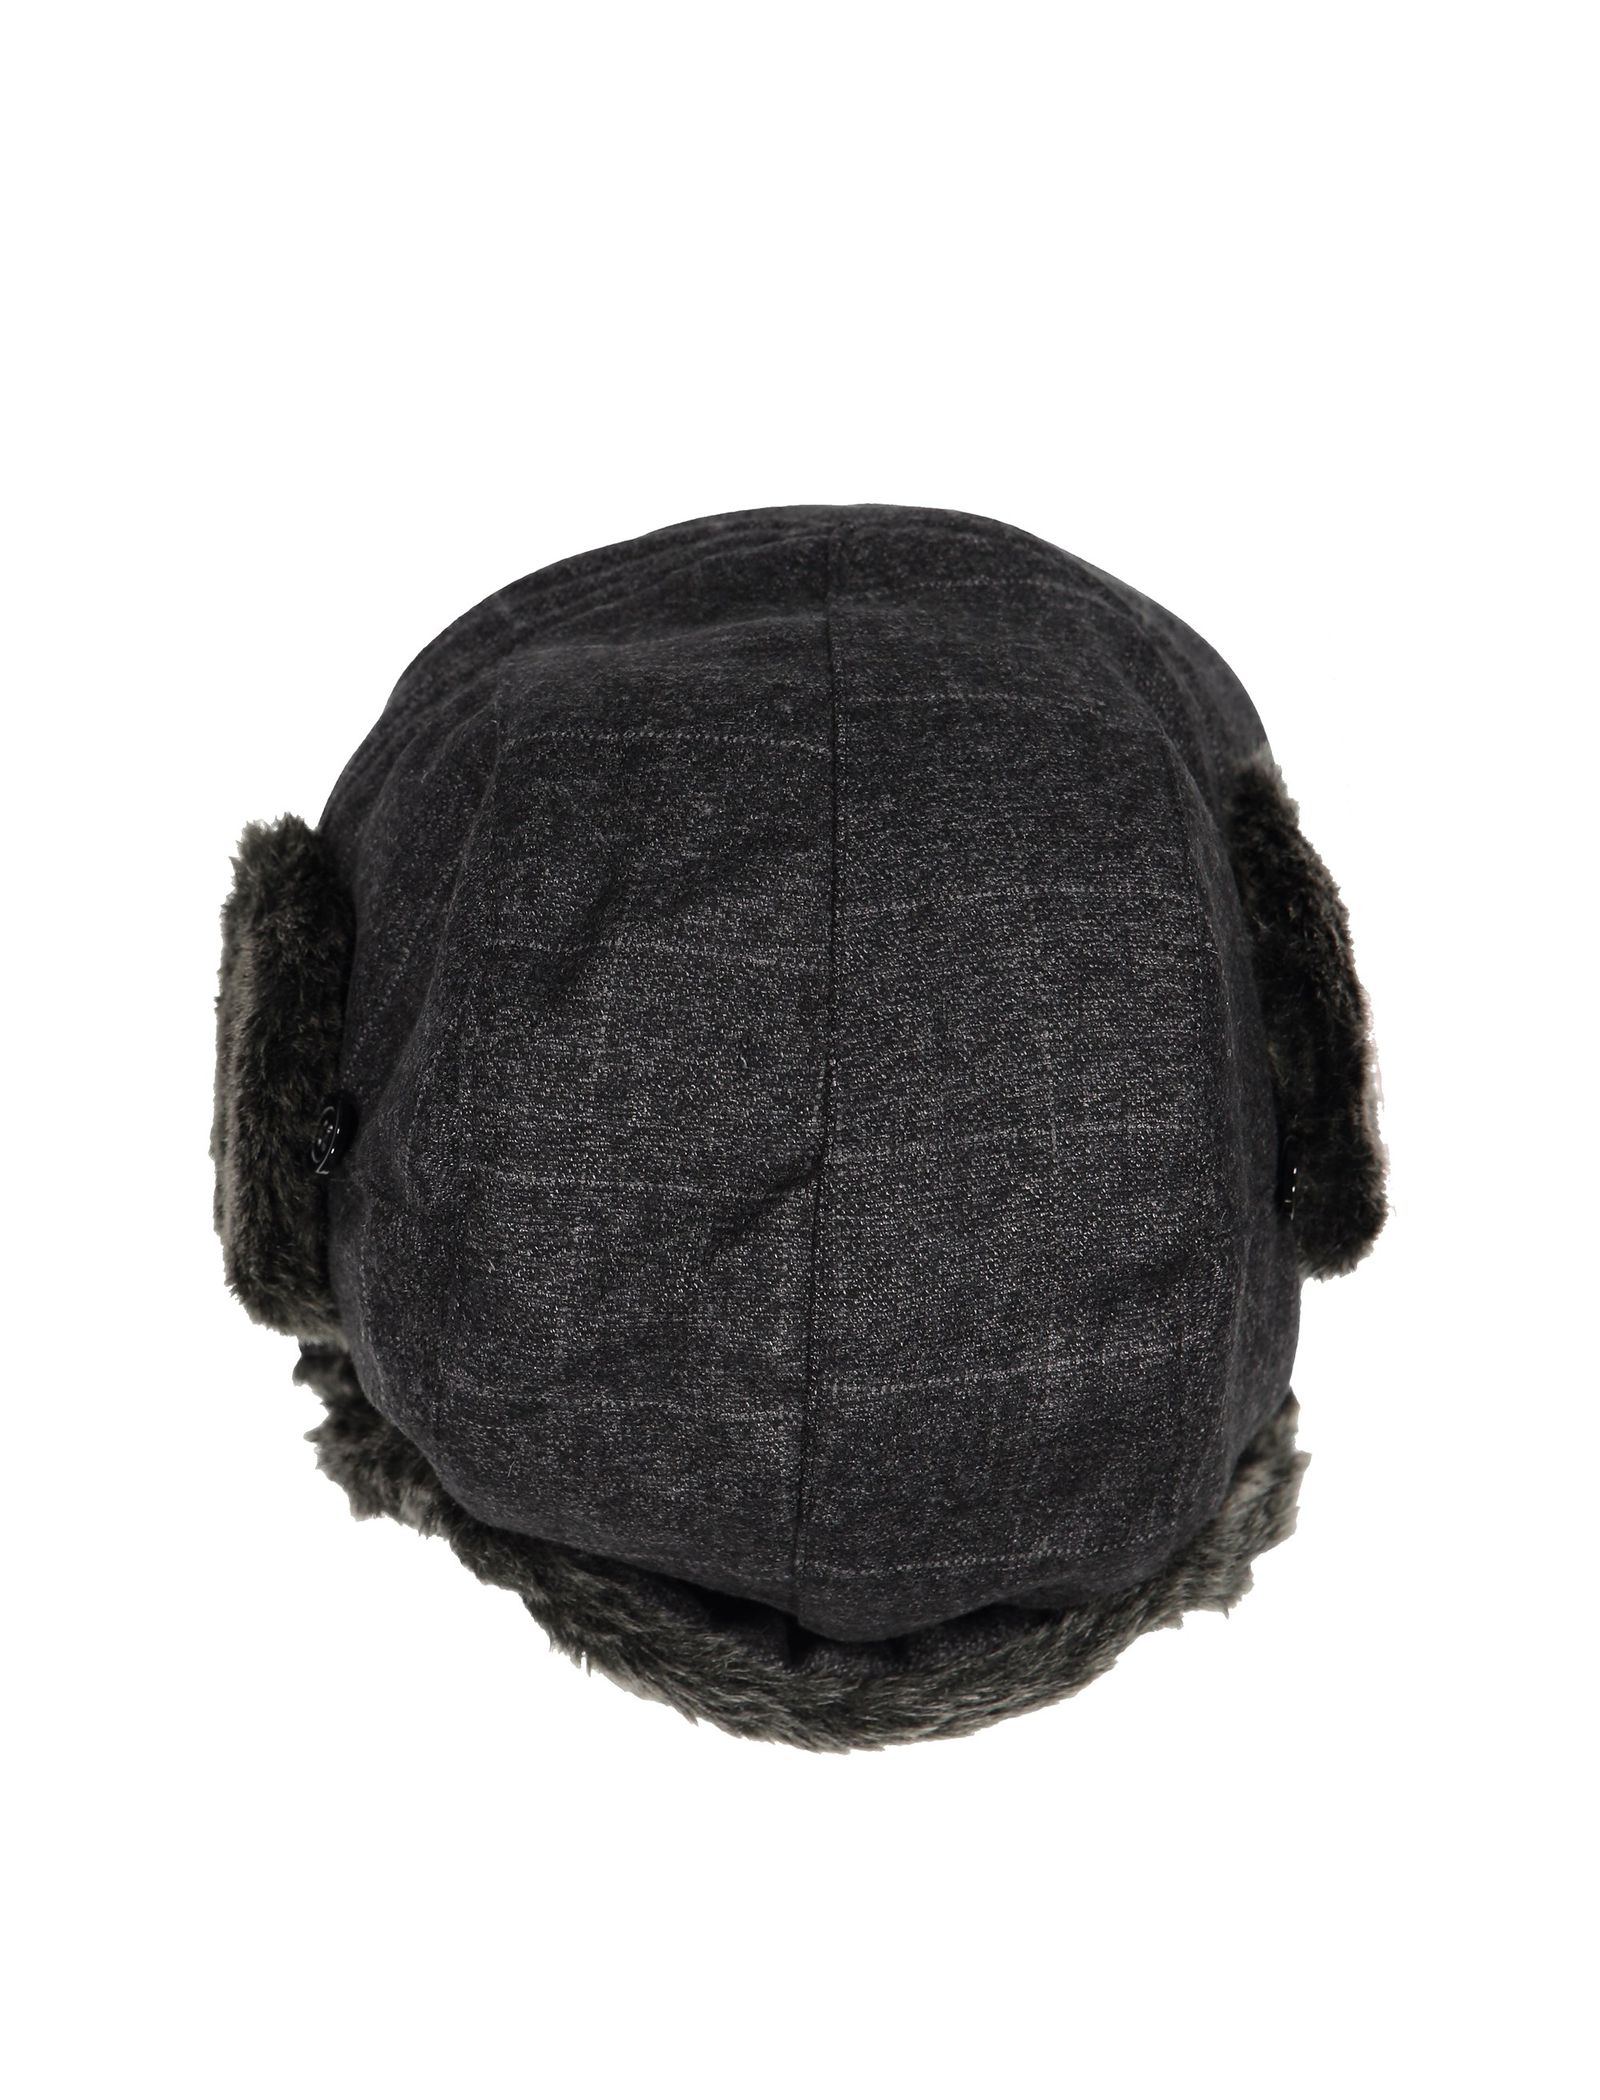 کلاه زمستانی مردانه - مانگو - طوسي - 6